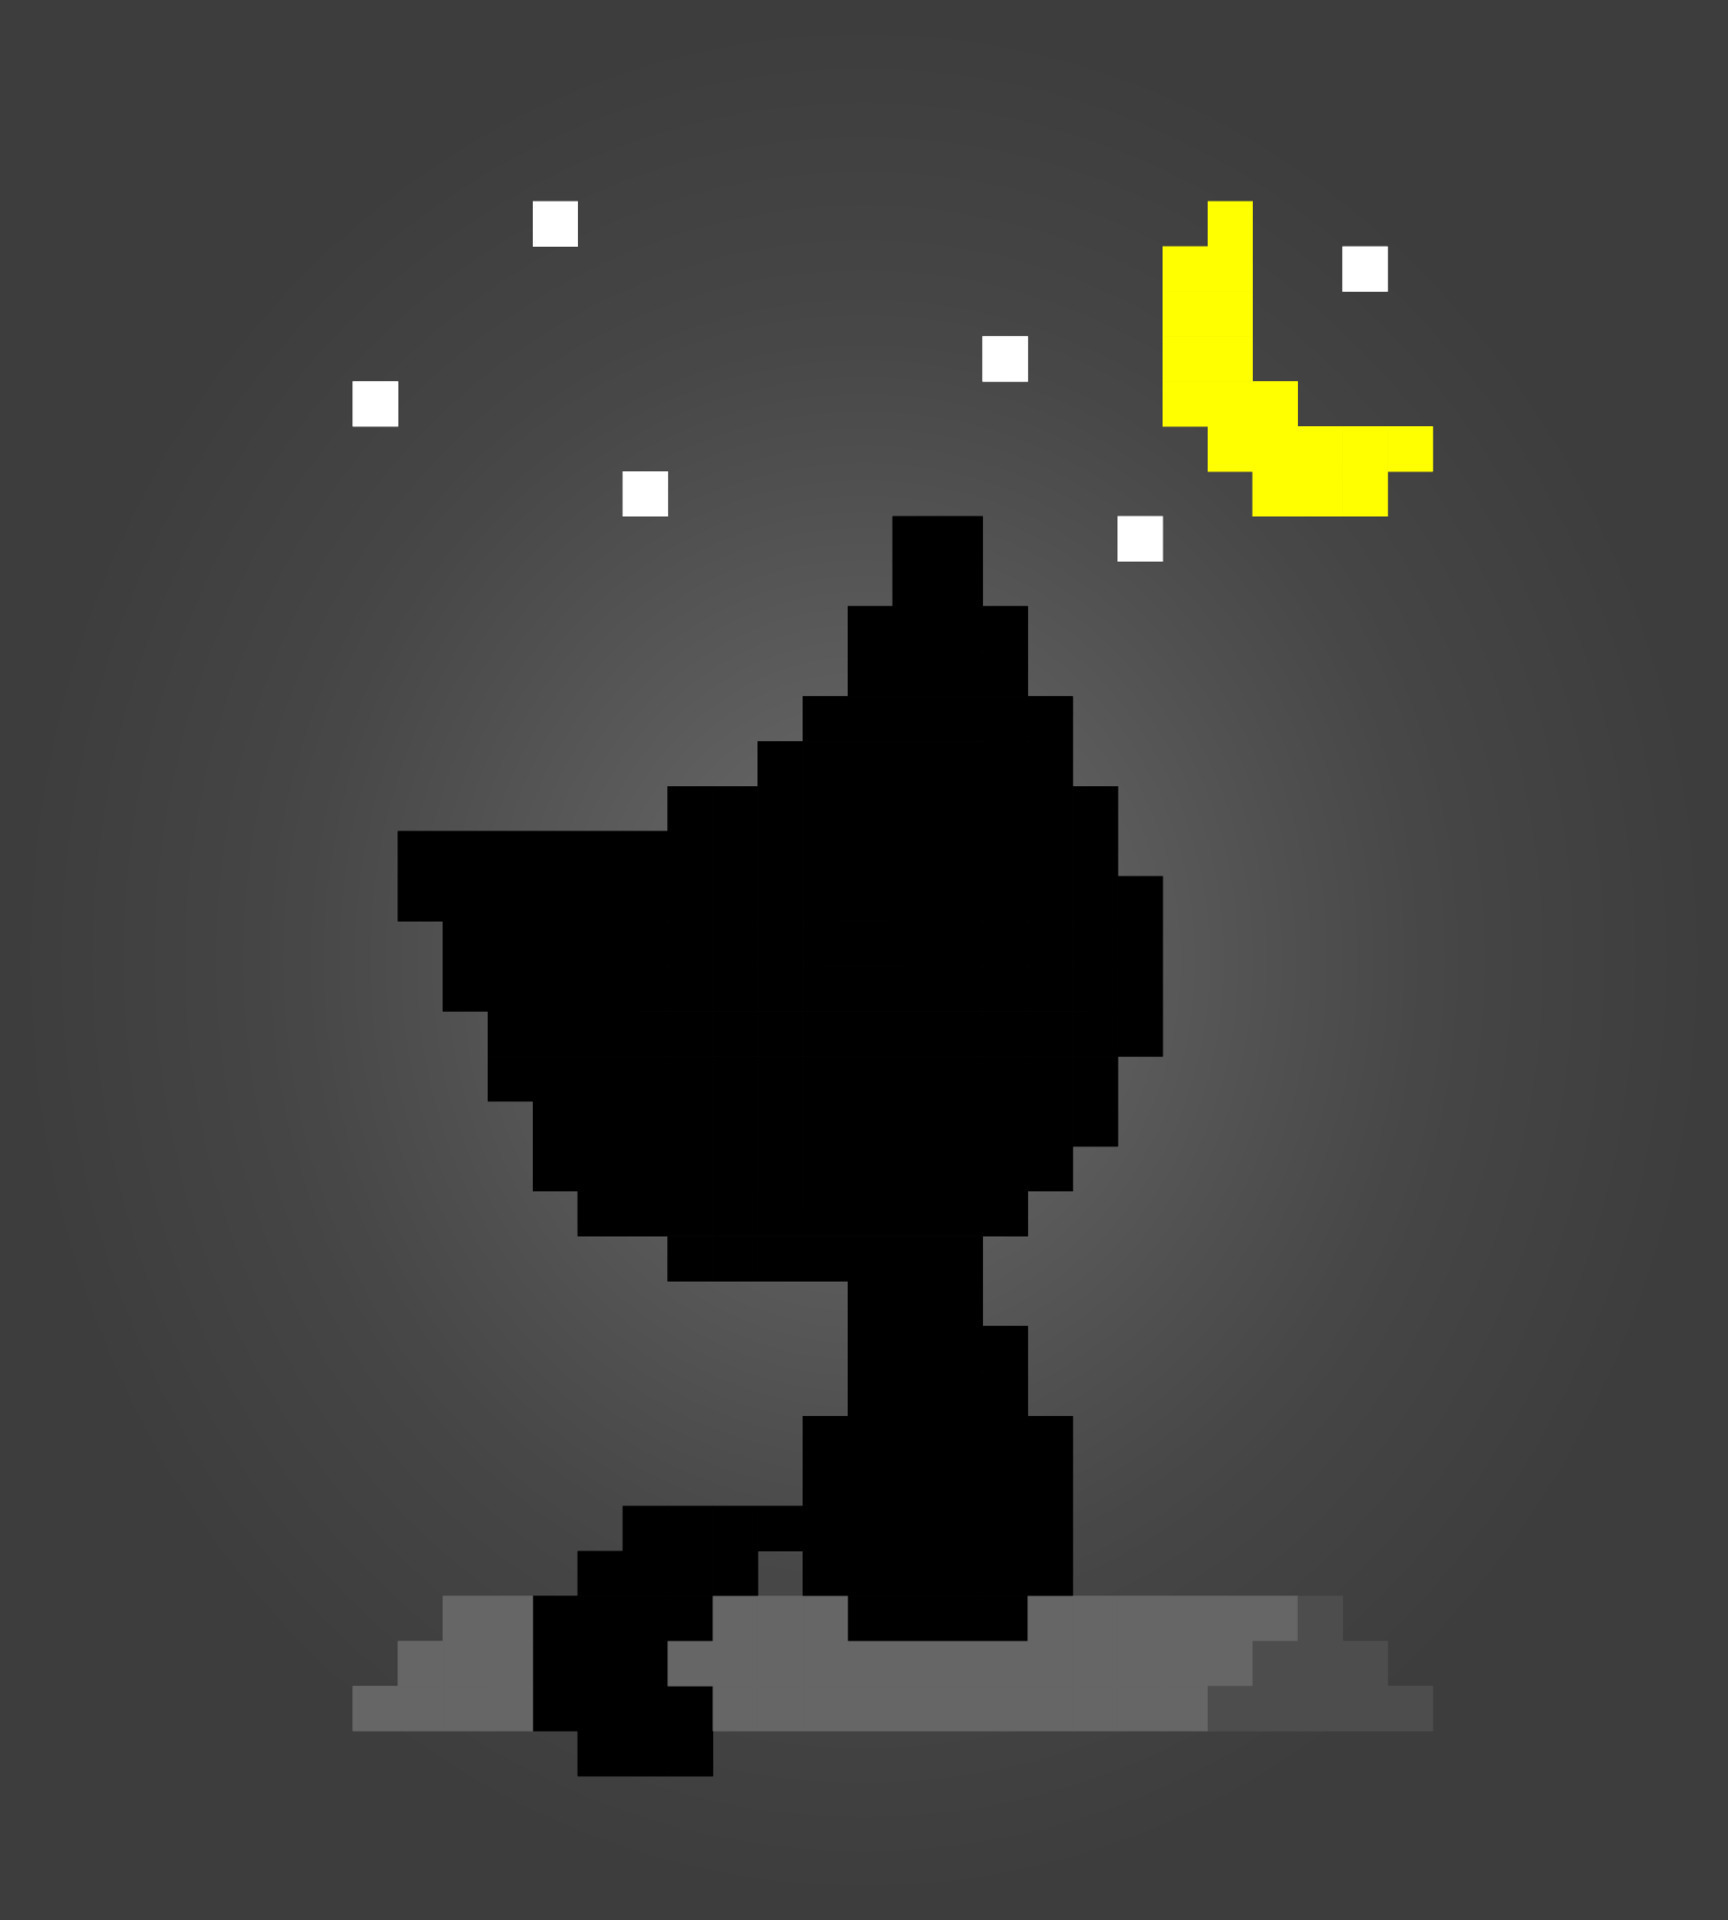 Pixel 8 bits gato preto animais para ativos de jogo em ilustração vetorial